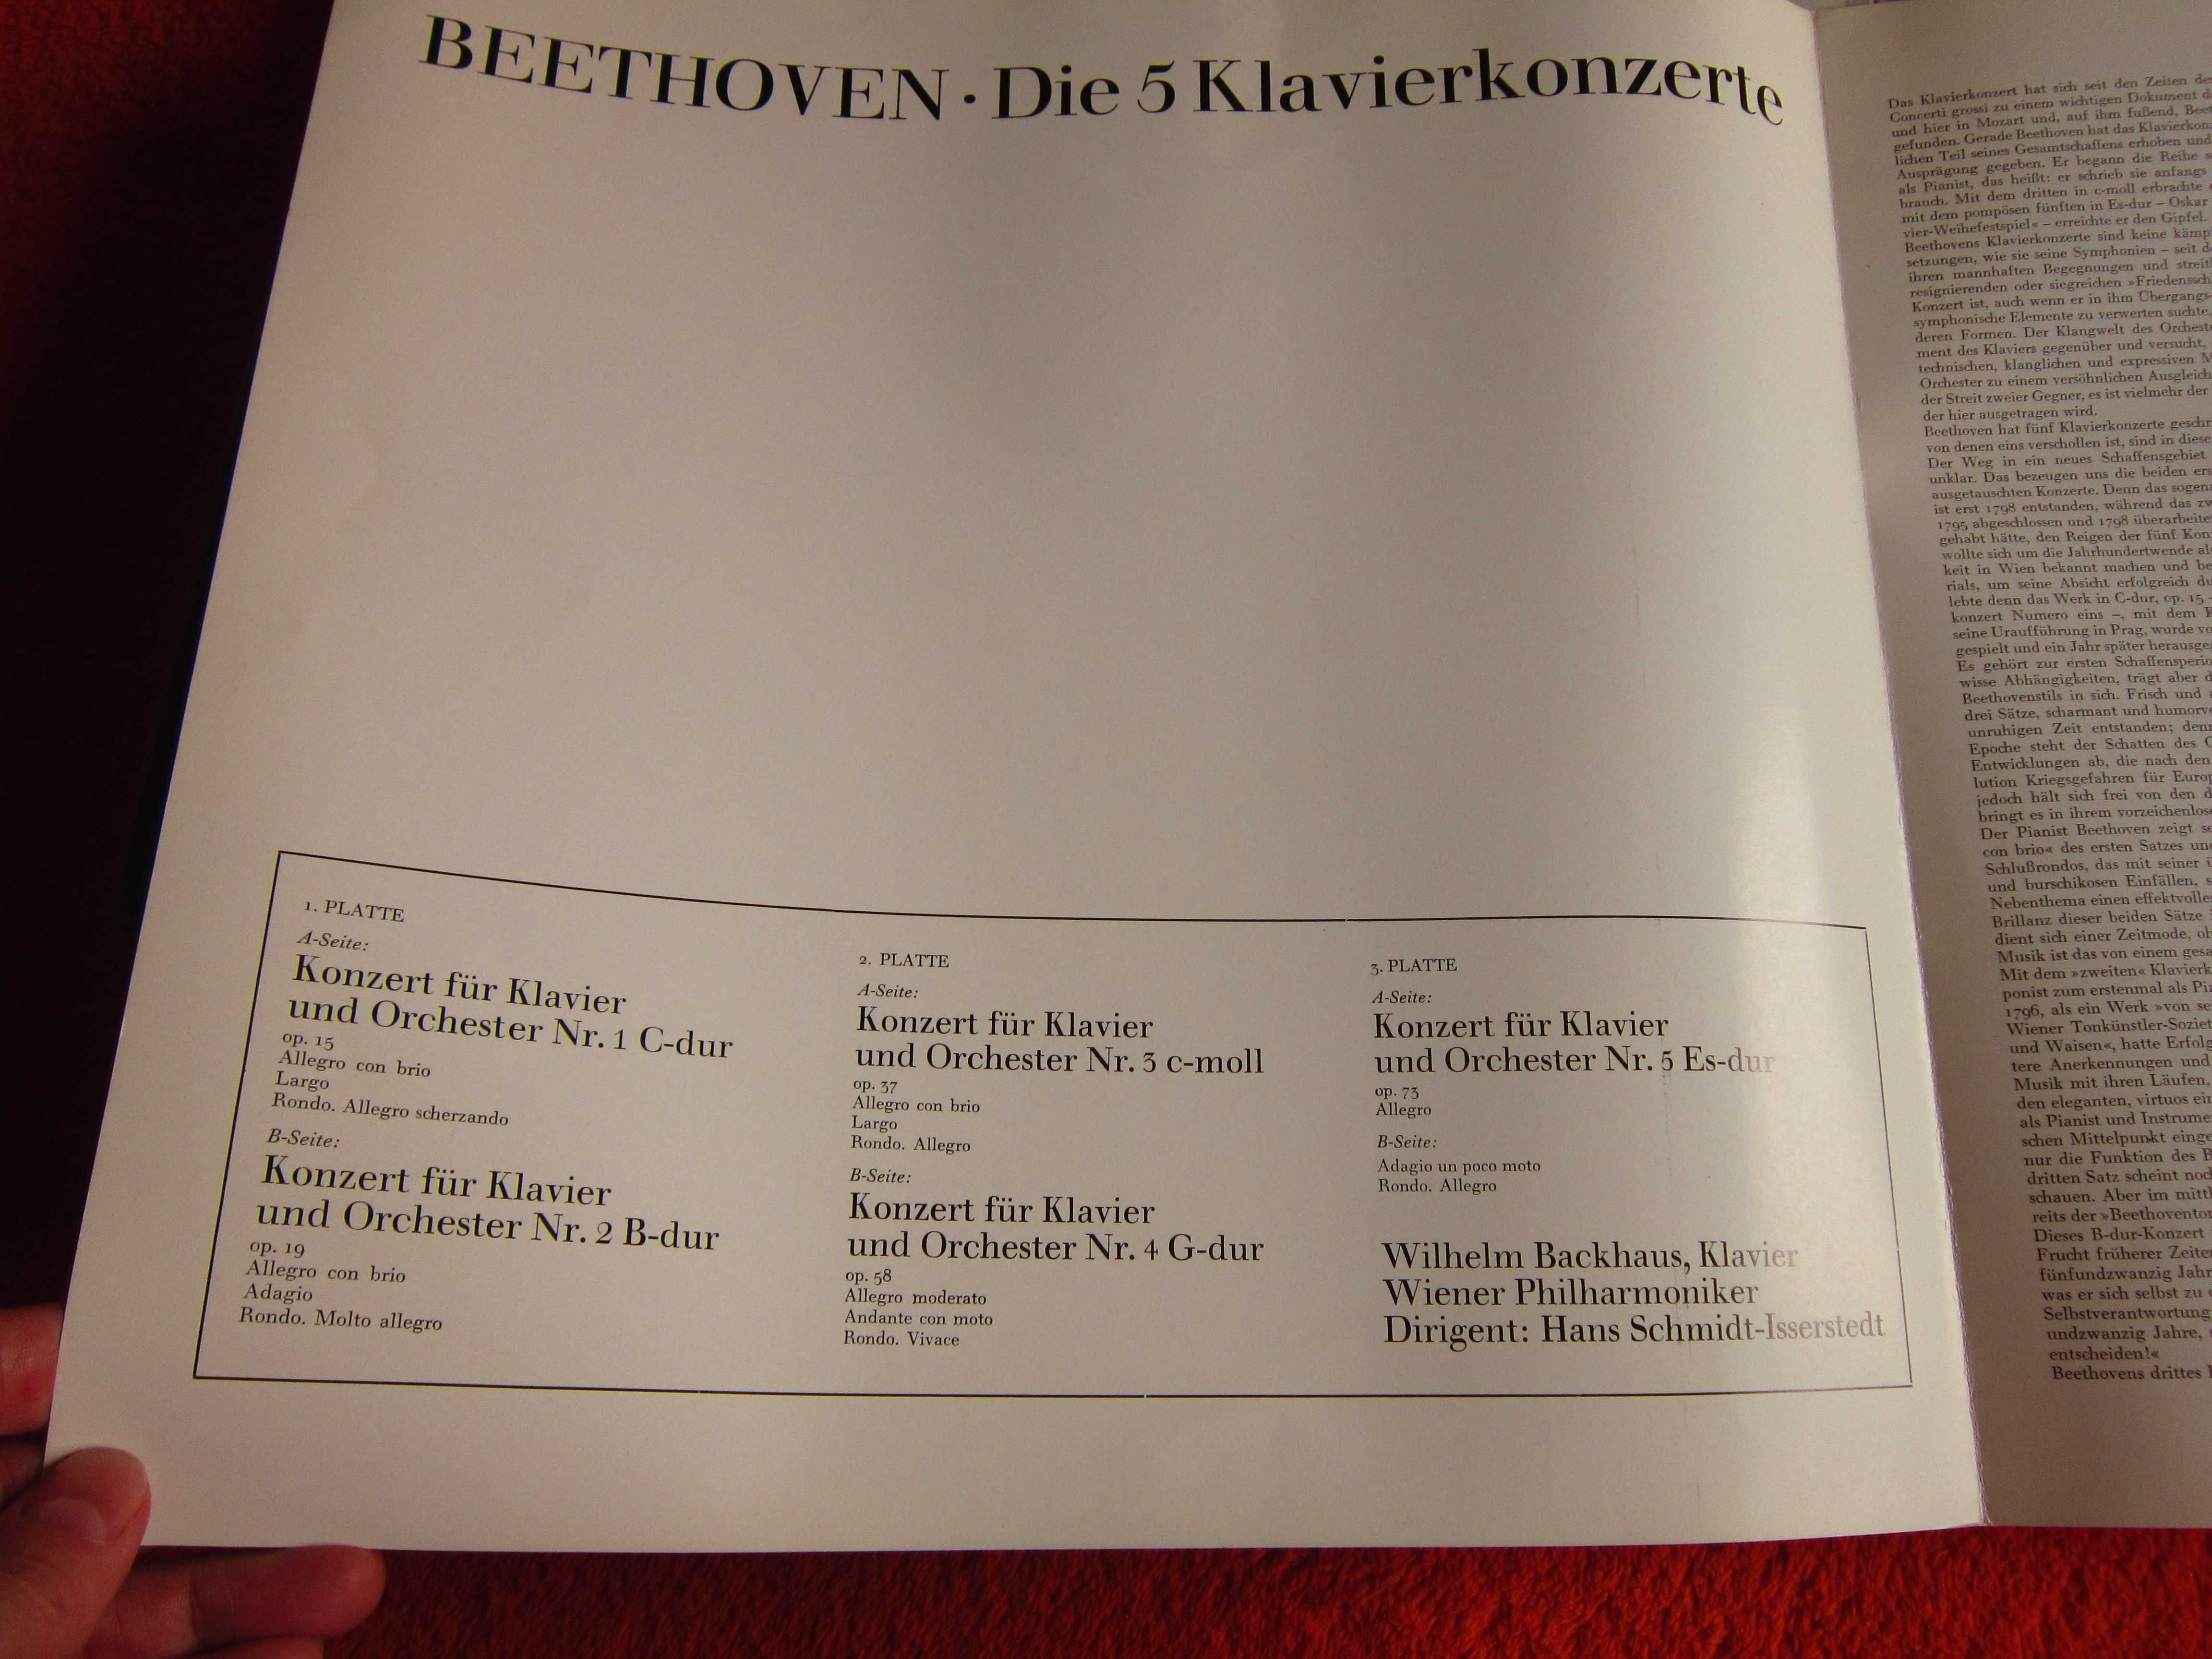 vinil Beethoven -W. Backhaus Concert pian 1,2,3,4,5 an 1969 impecabile